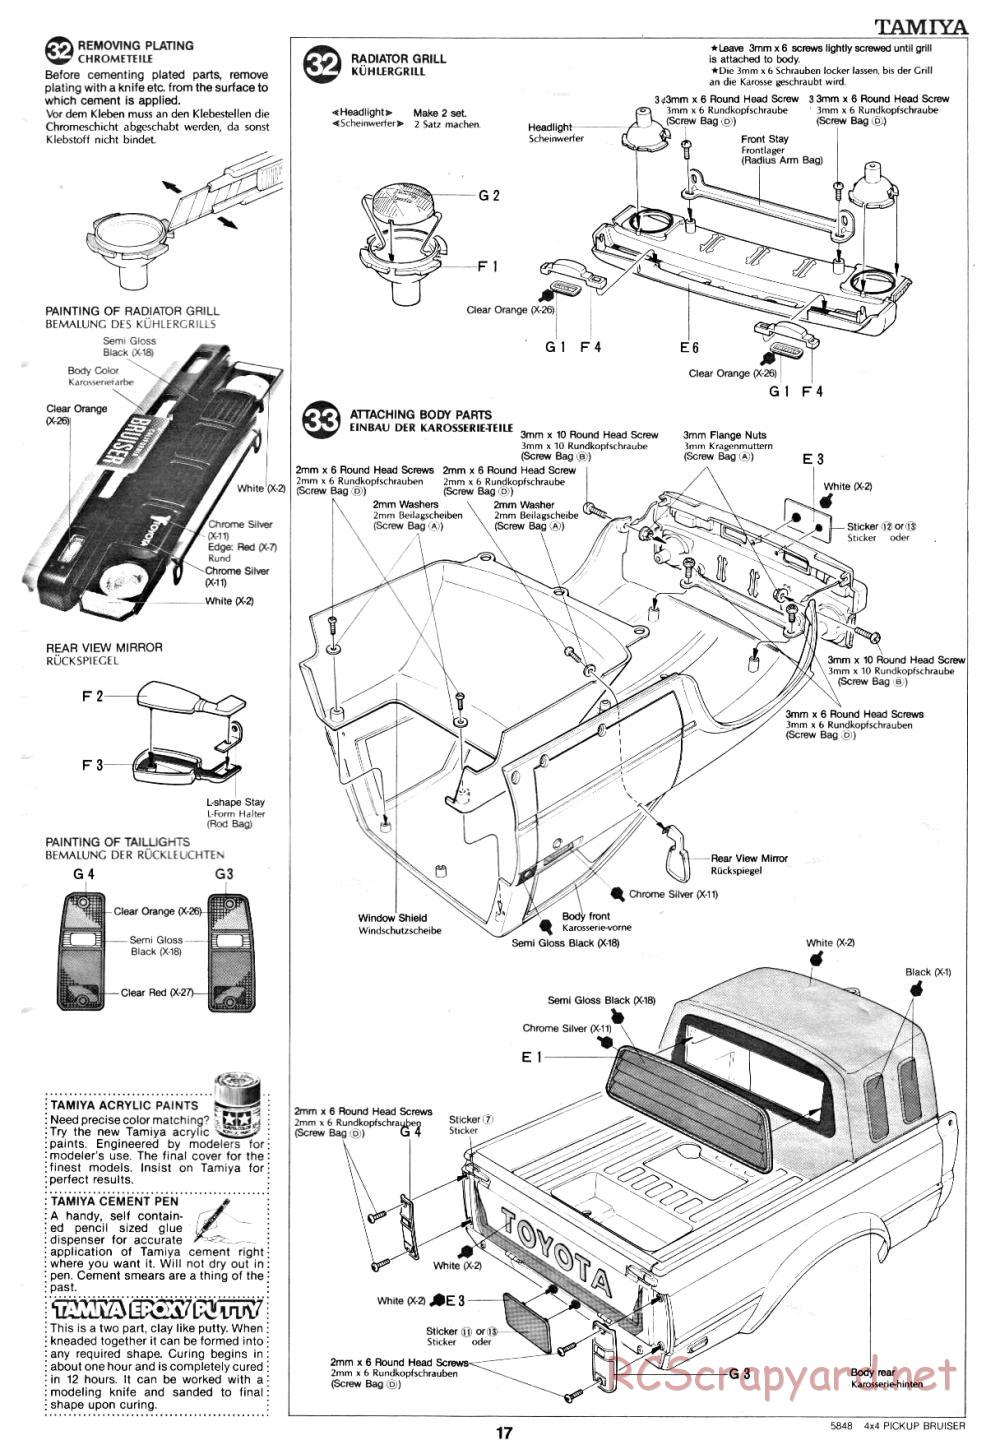 Tamiya - Toyota 4x4 Pick-Up Bruiser - 58048 - Manual - Page 17